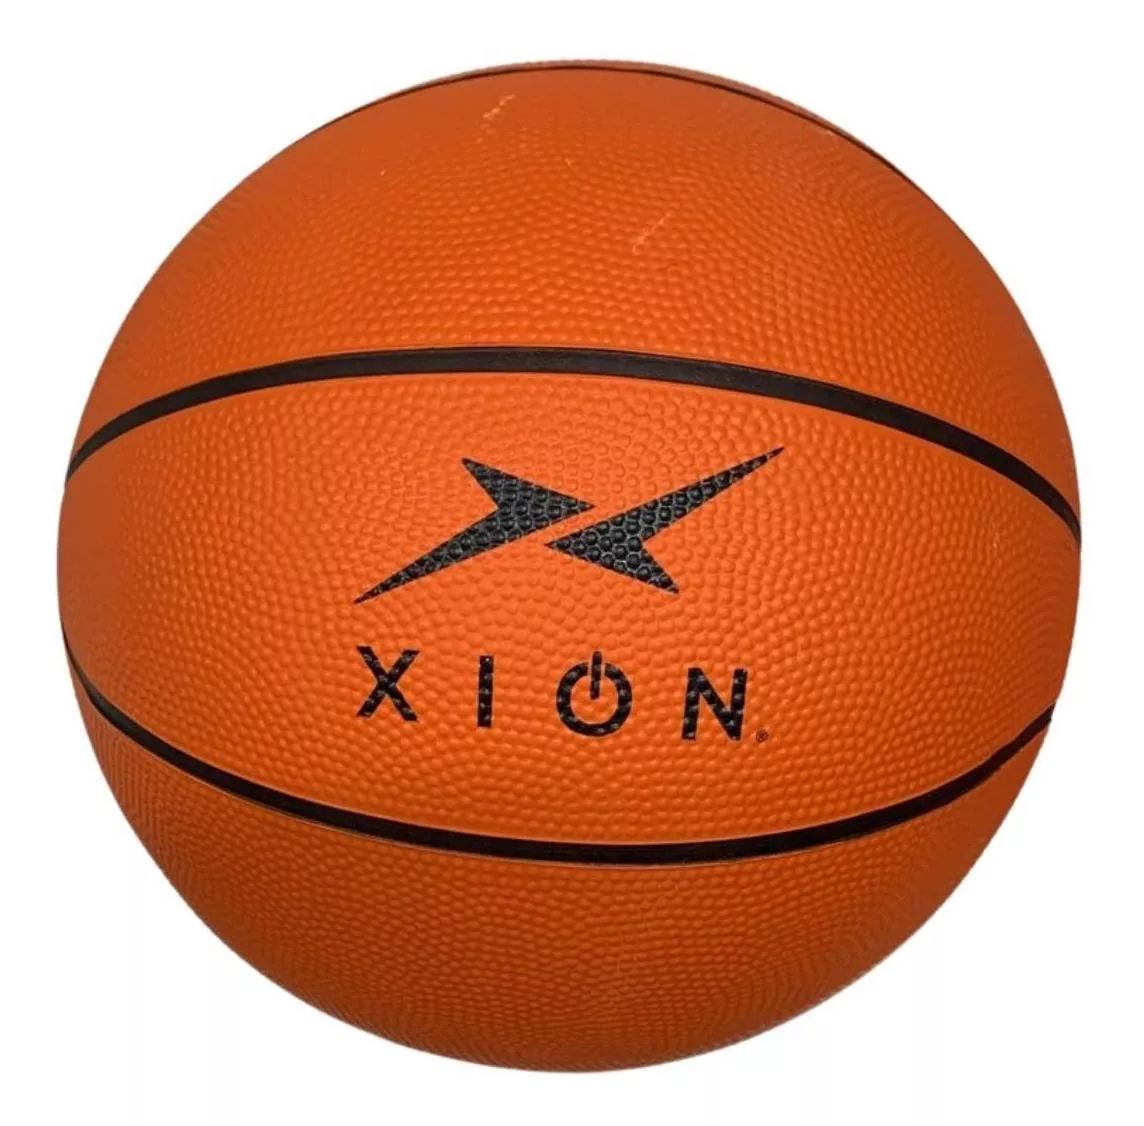 Balon Basquetbol No 7 Xion Recreativo Entrenamiento Hule